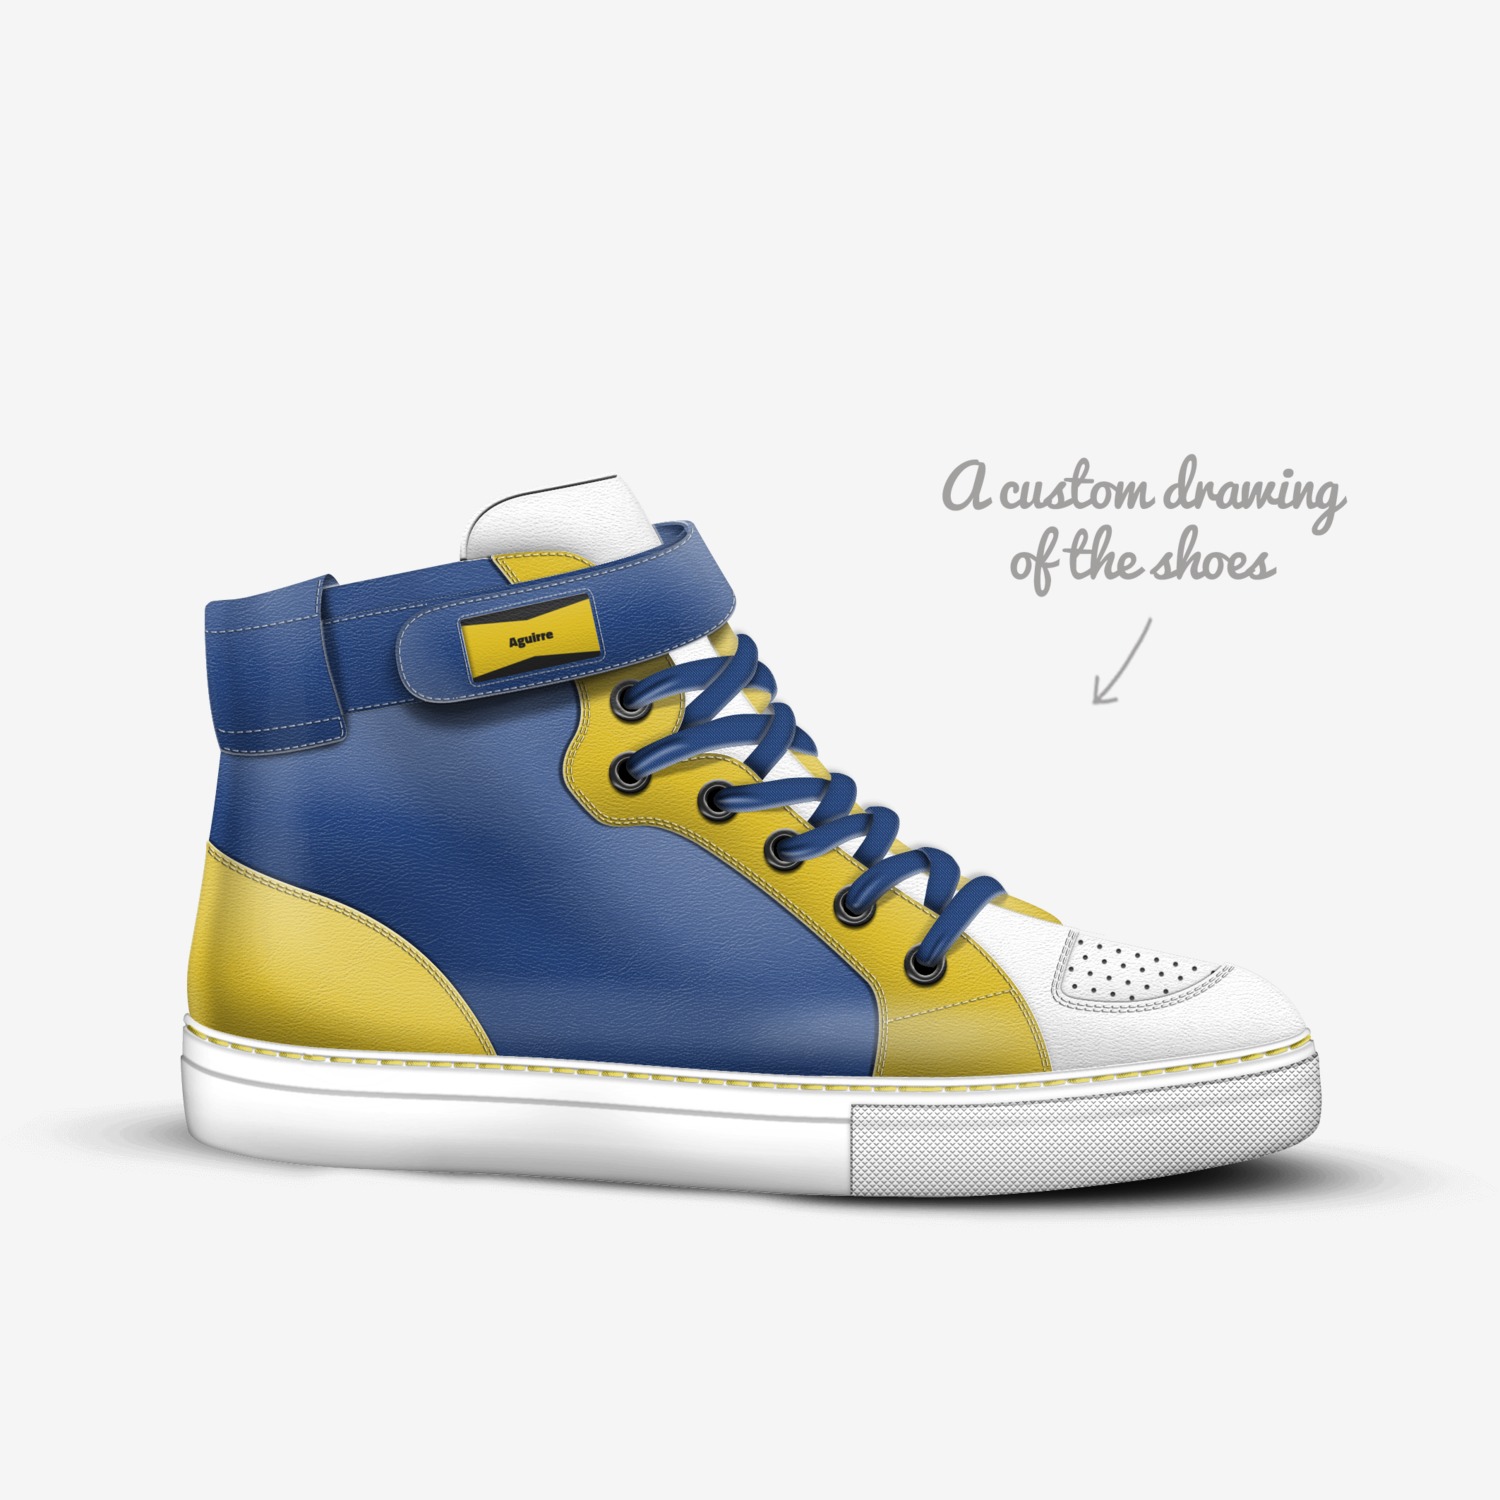 Decepcionado mentiroso programa Aguirre | A Custom Shoe concept by Hector